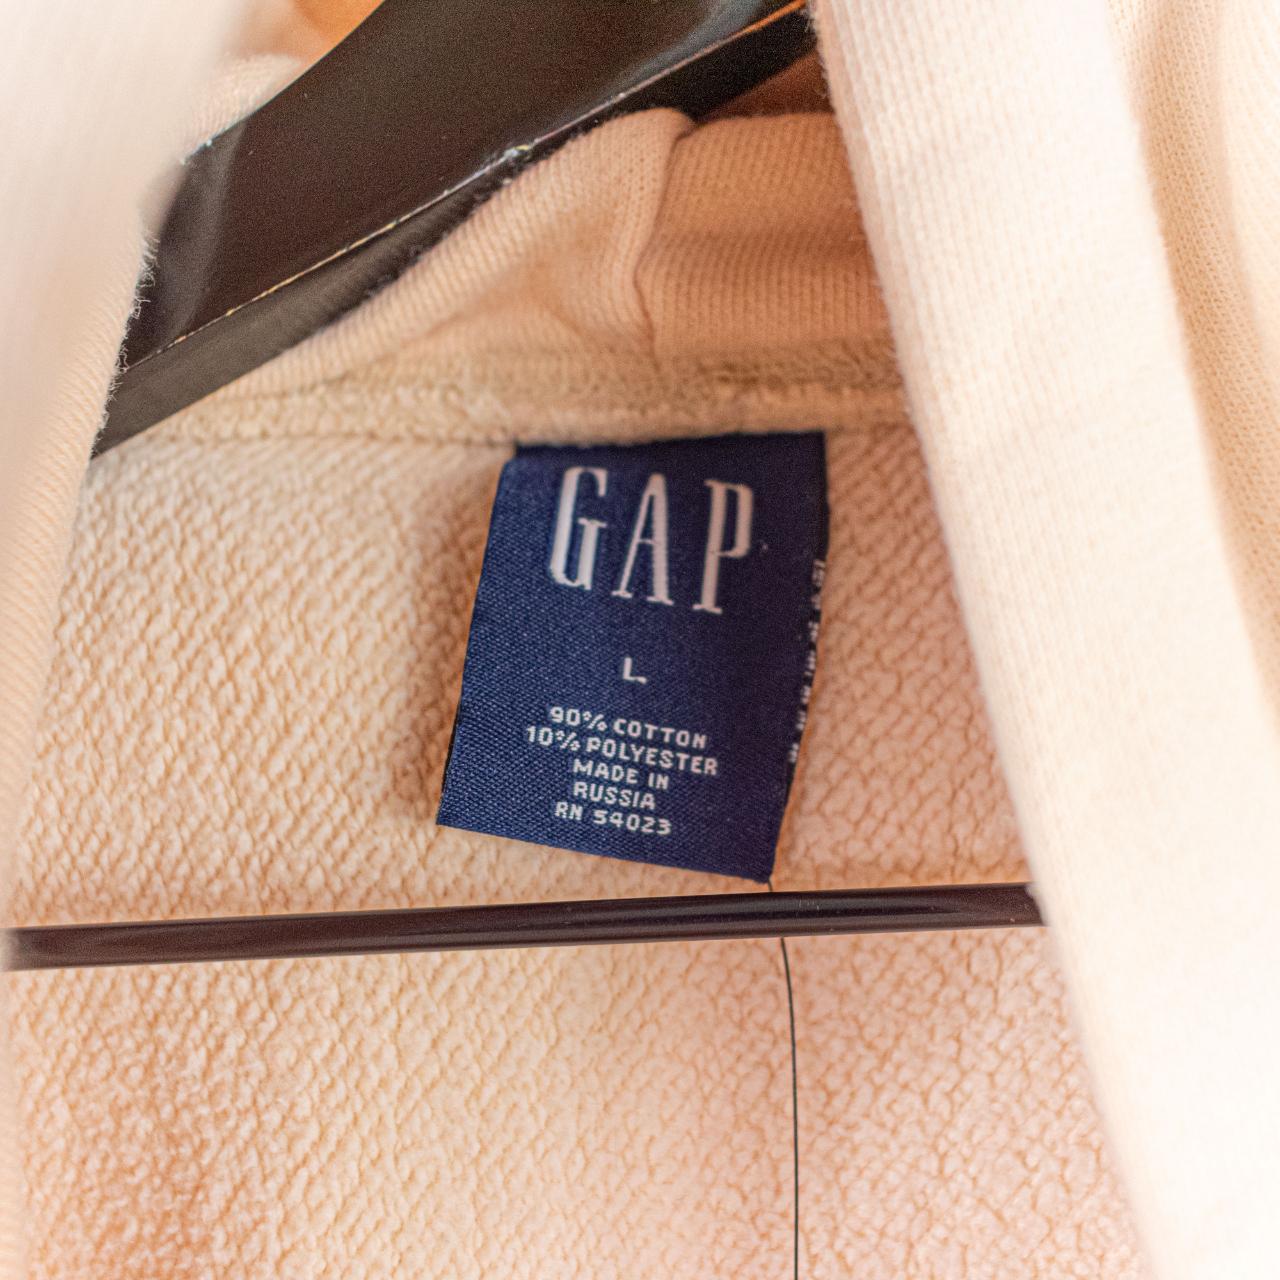 90s vintage gap hoodie. Brown with a beige gap logo - Depop